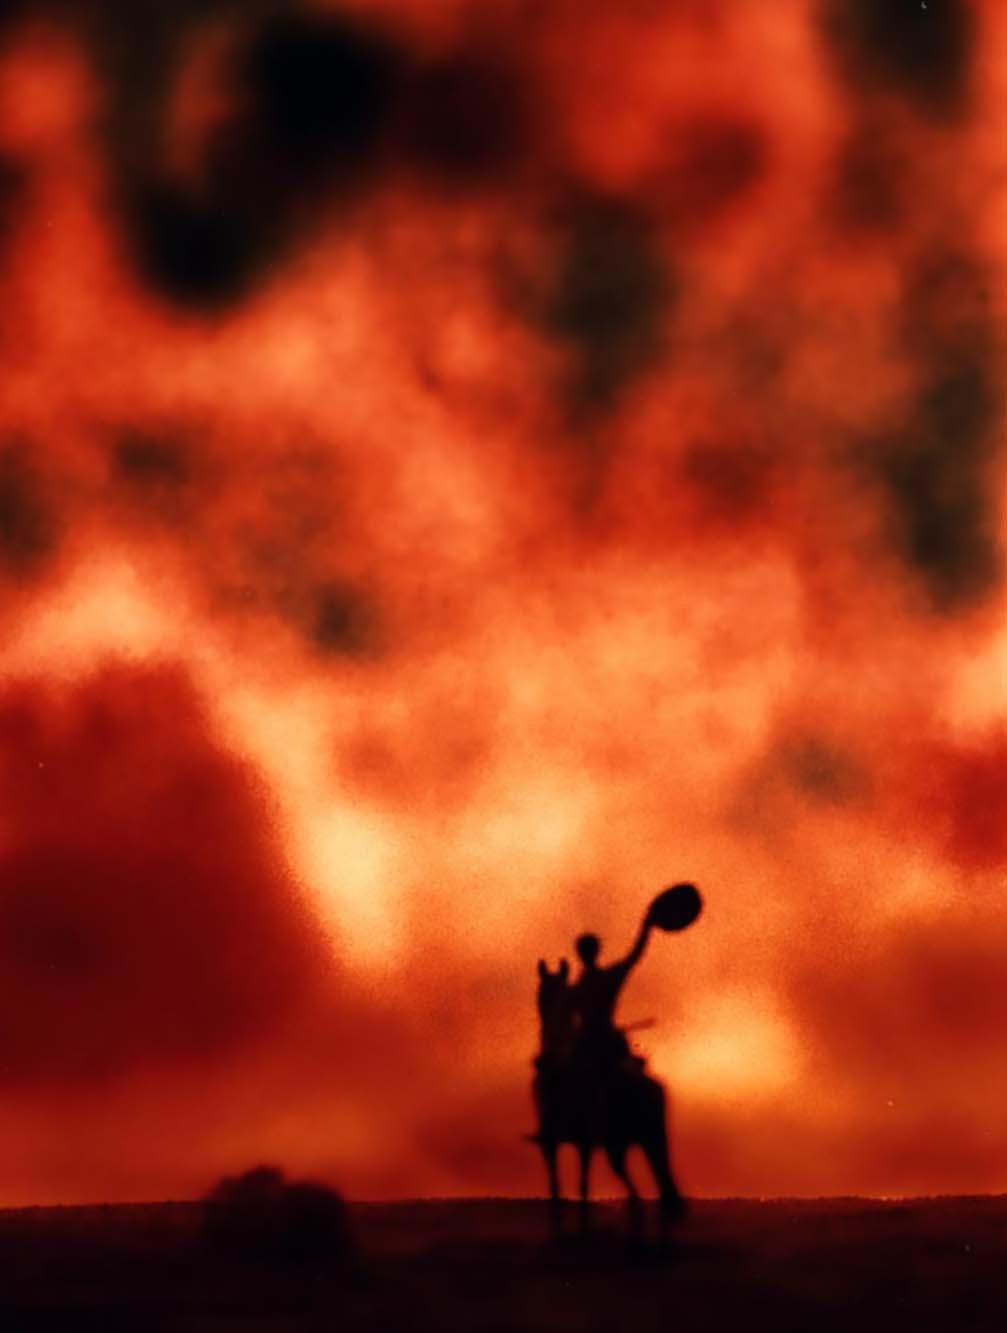 Vintage Dunkelkammer Cowboy Foto im Stil von Richard Prince ca. Ende der 1980er Jahre:

Eine hervorragend wiedergegebene Vintage-Dunkelkammerfotografie, die auf surrealistische Weise die Mythologie des amerikanischen Cowboys inmitten eines glühenden